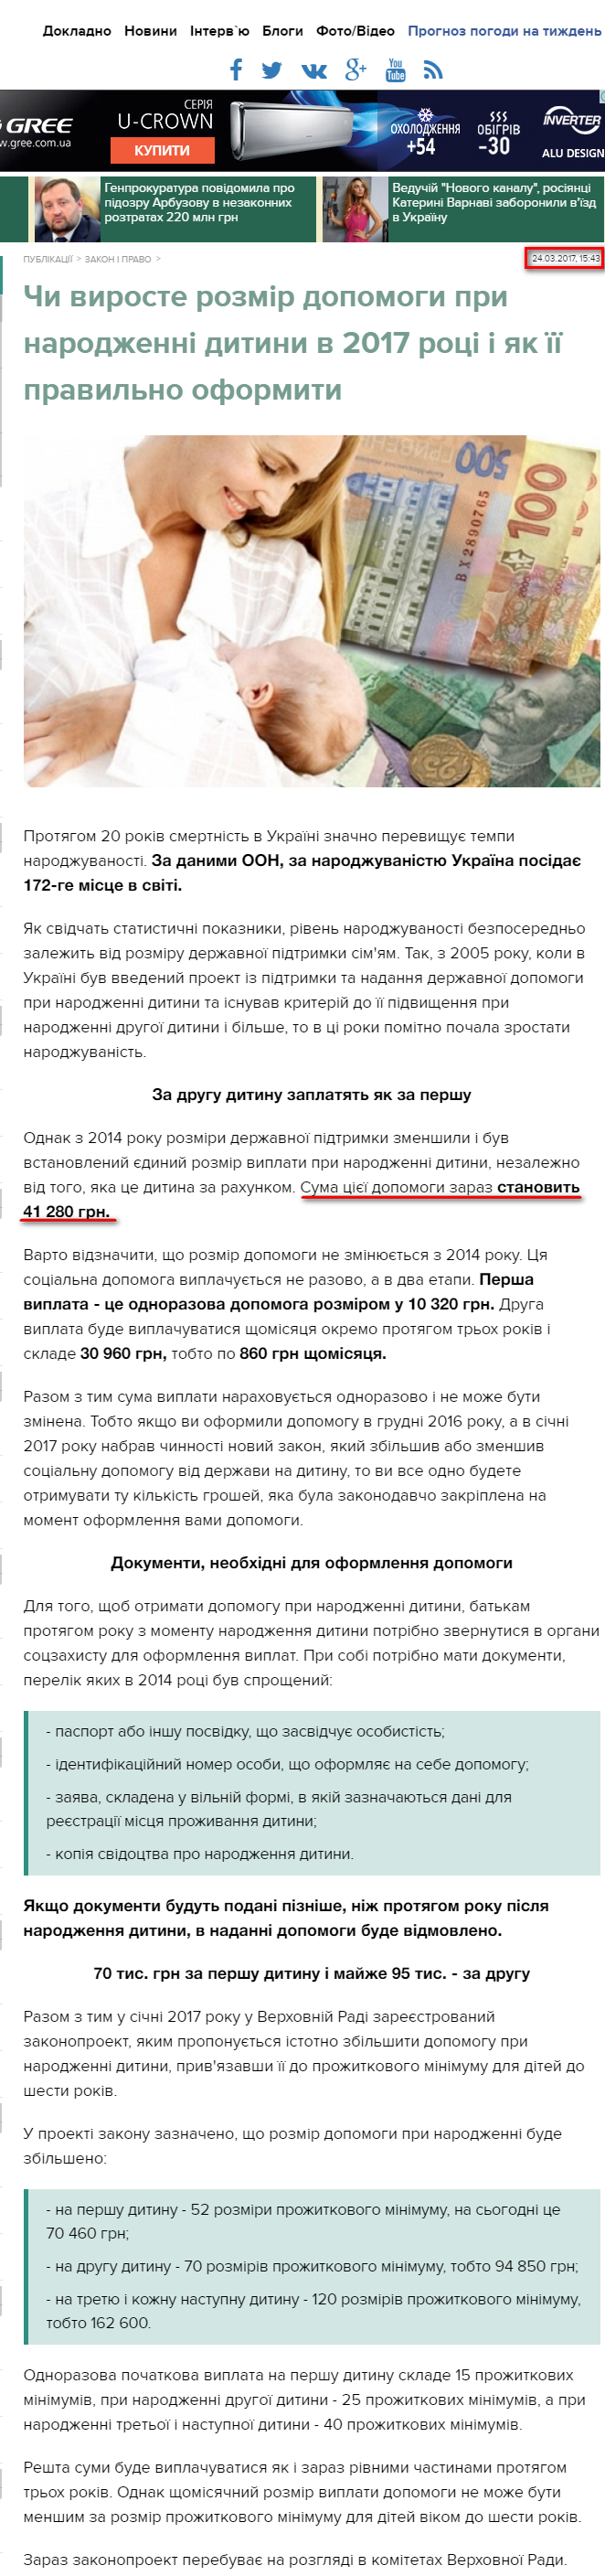 http://asn.in.ua/ua/news/publishing/93269-vyrastet-li-razmer-pomoshhi-pri-rozhdenii-rebenka.html